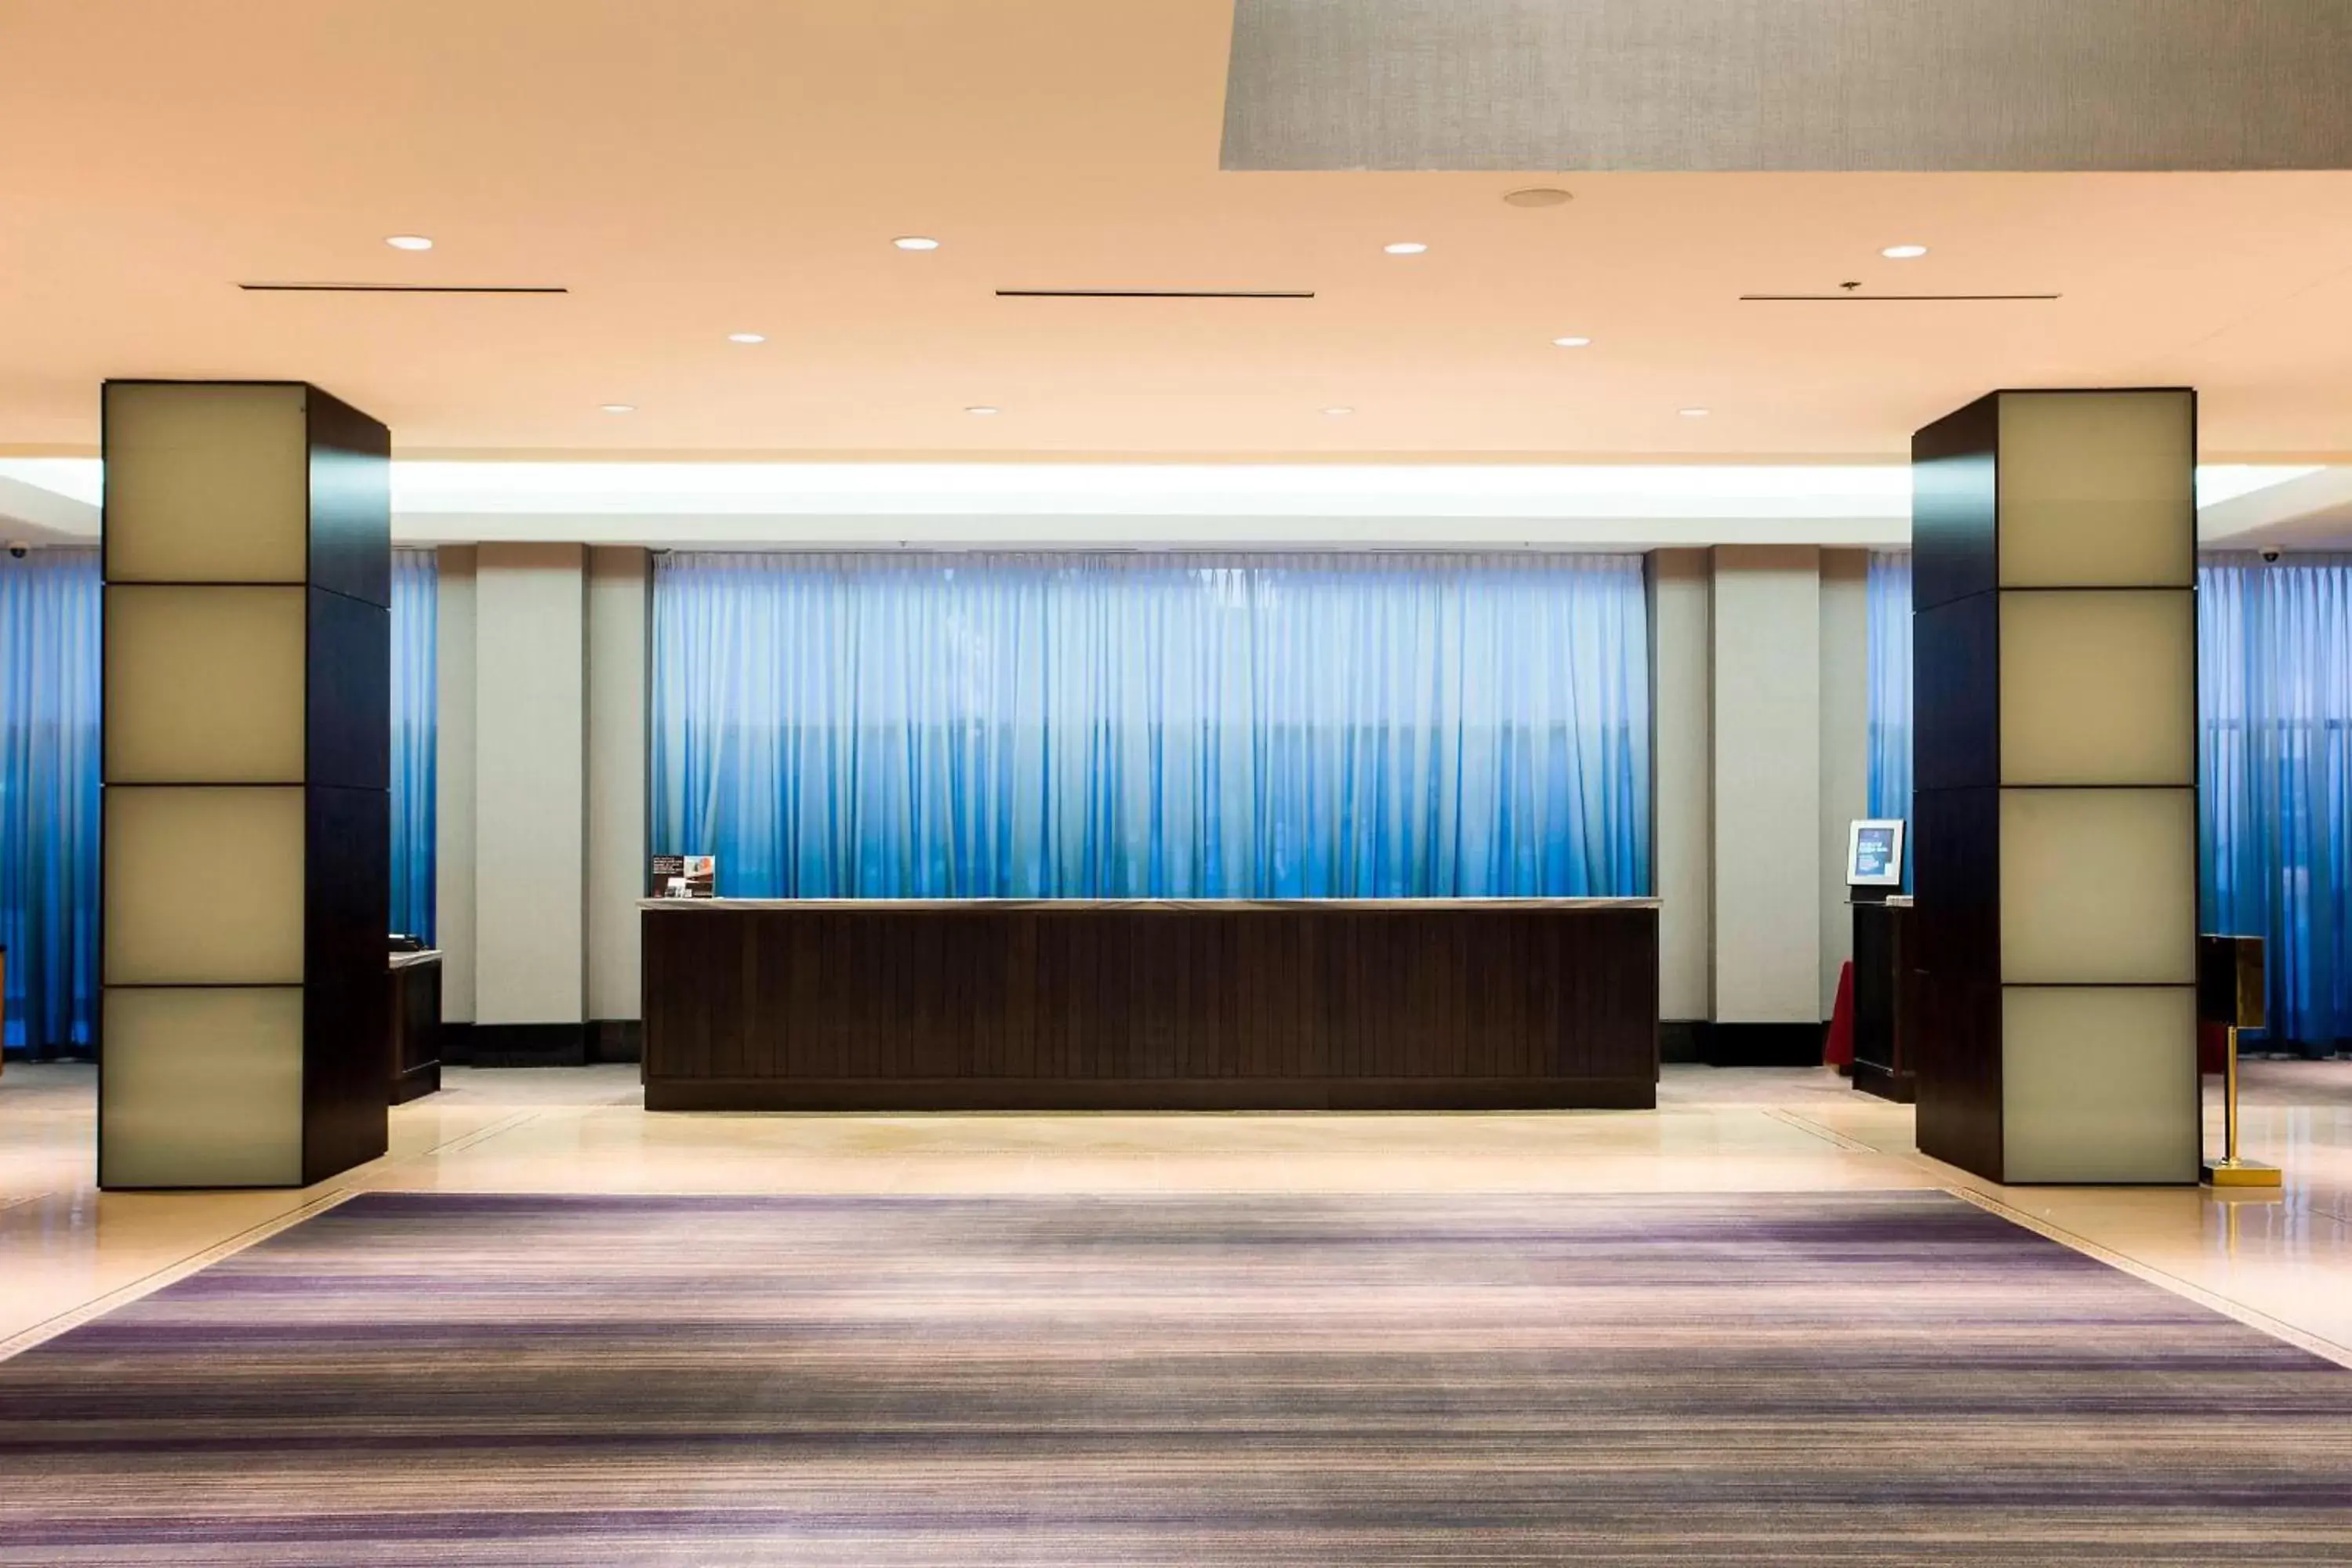 Lobby or reception in Little Rock Marriott